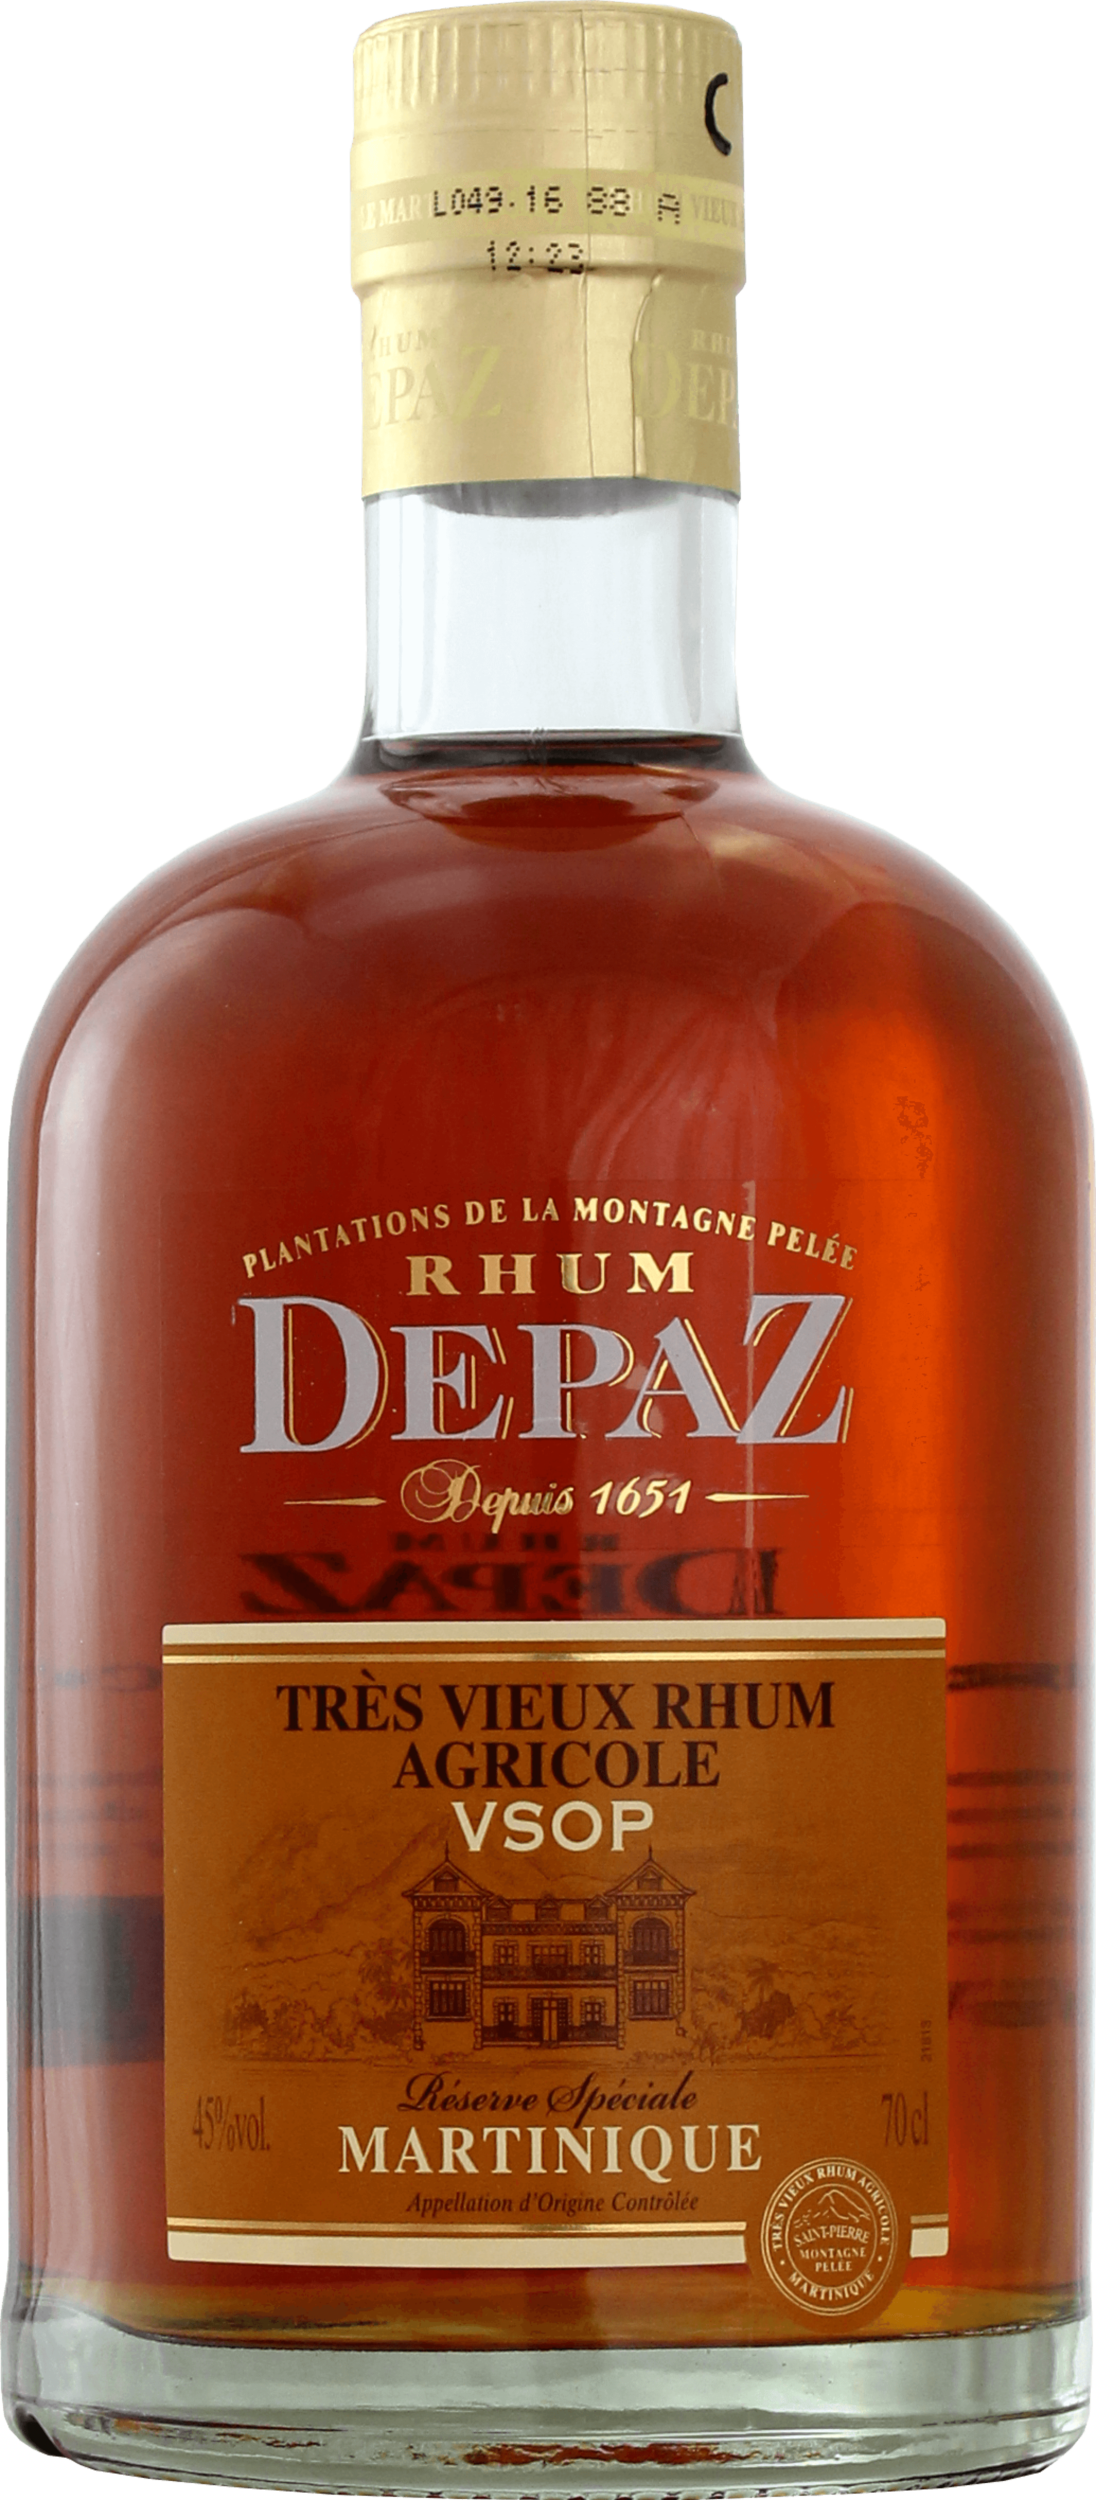 Depaz - Rhum vieux - Plantation - Coffret 2 verres - 70cl - 45°